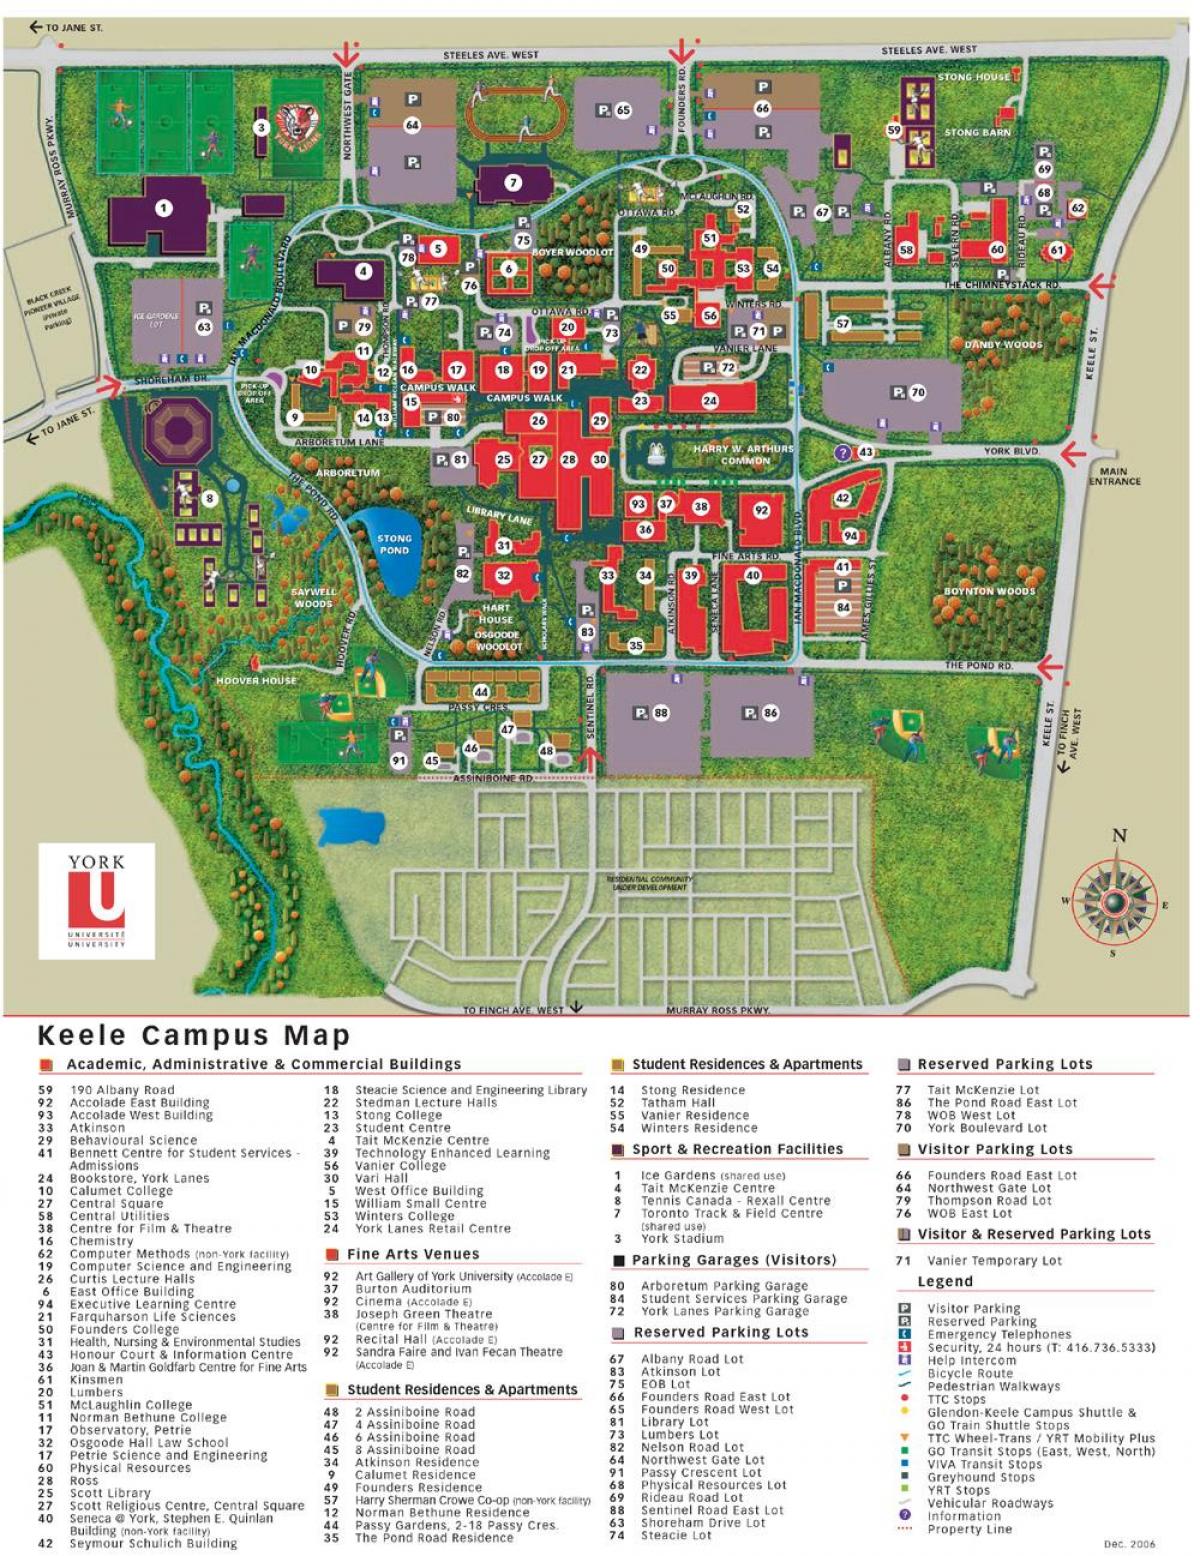 Mapa de York universitat de keele campus